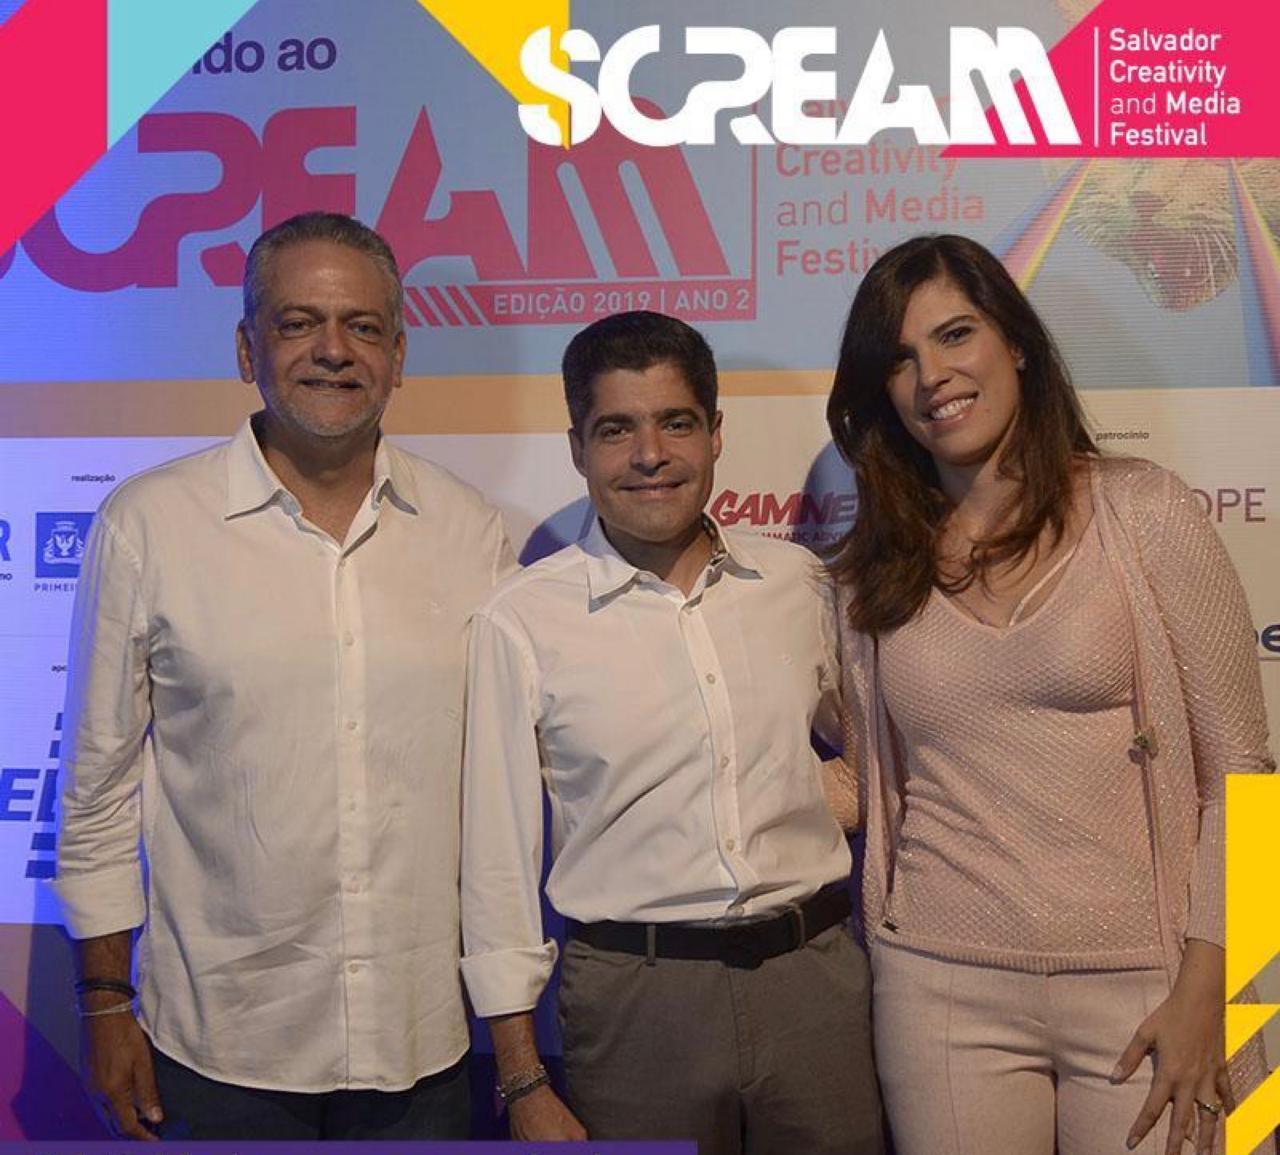 Scream Festival 2020 será realizado em formato digital  